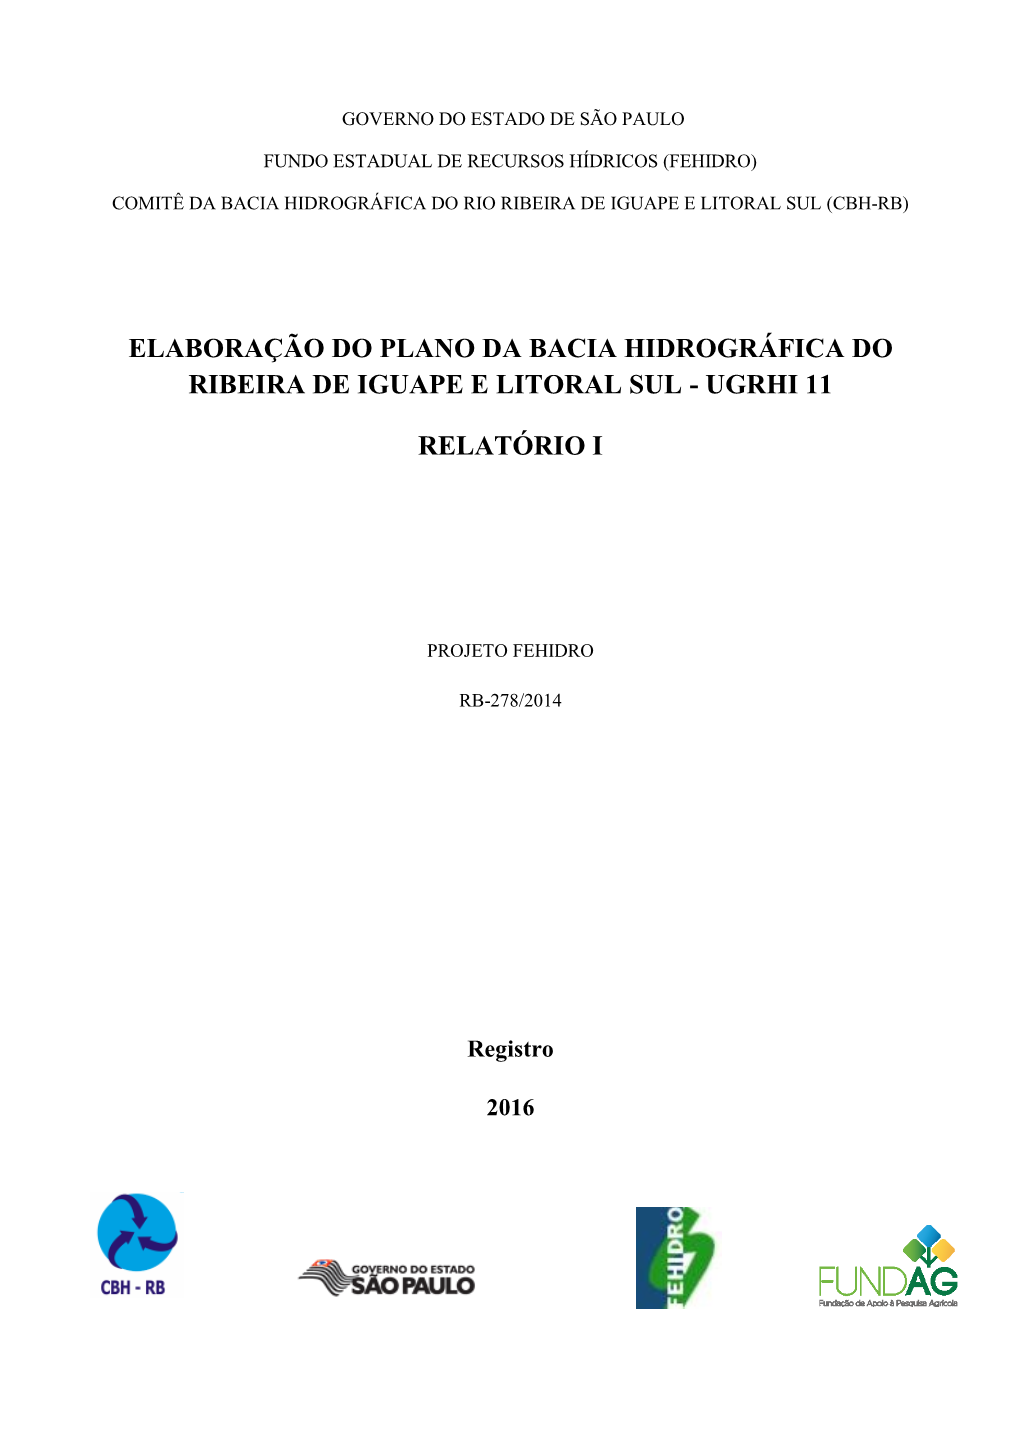 Elaboração Do Plano Da Bacia Hidrográfica Do Ribeira De Iguape E Litoral Sul - Ugrhi 11